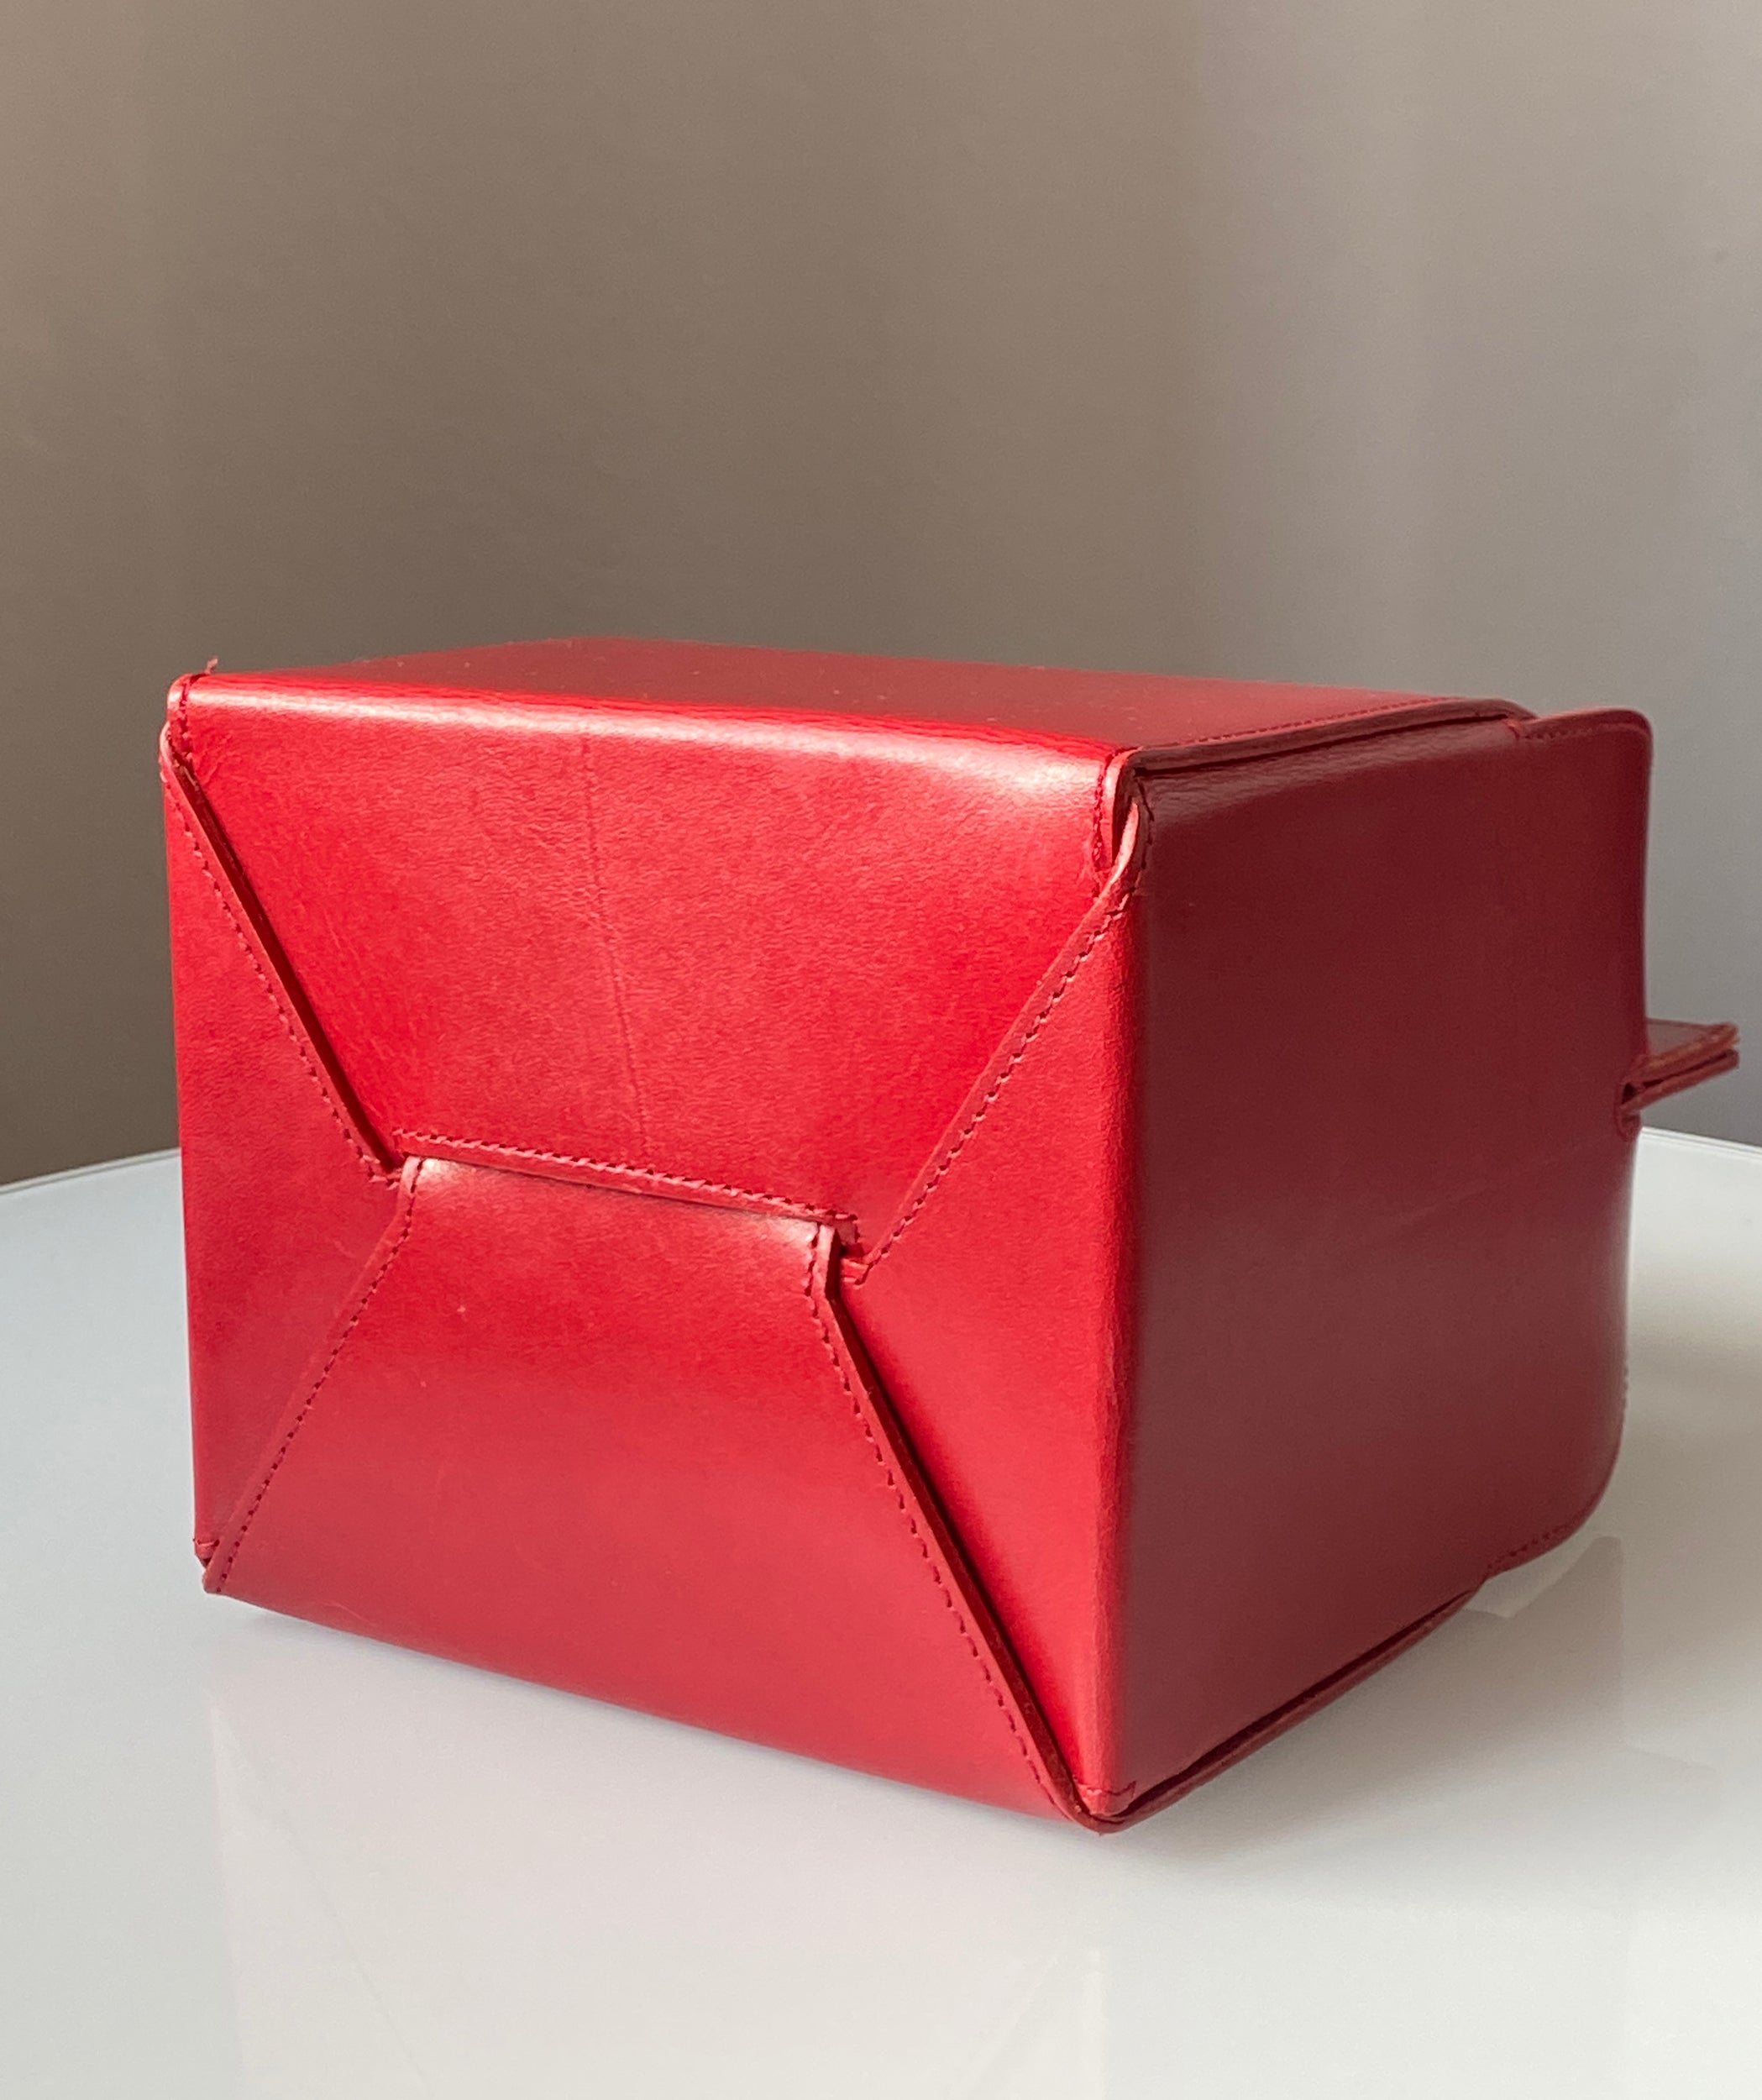 ISSEY MIYAKE Leather Folding Box Bag